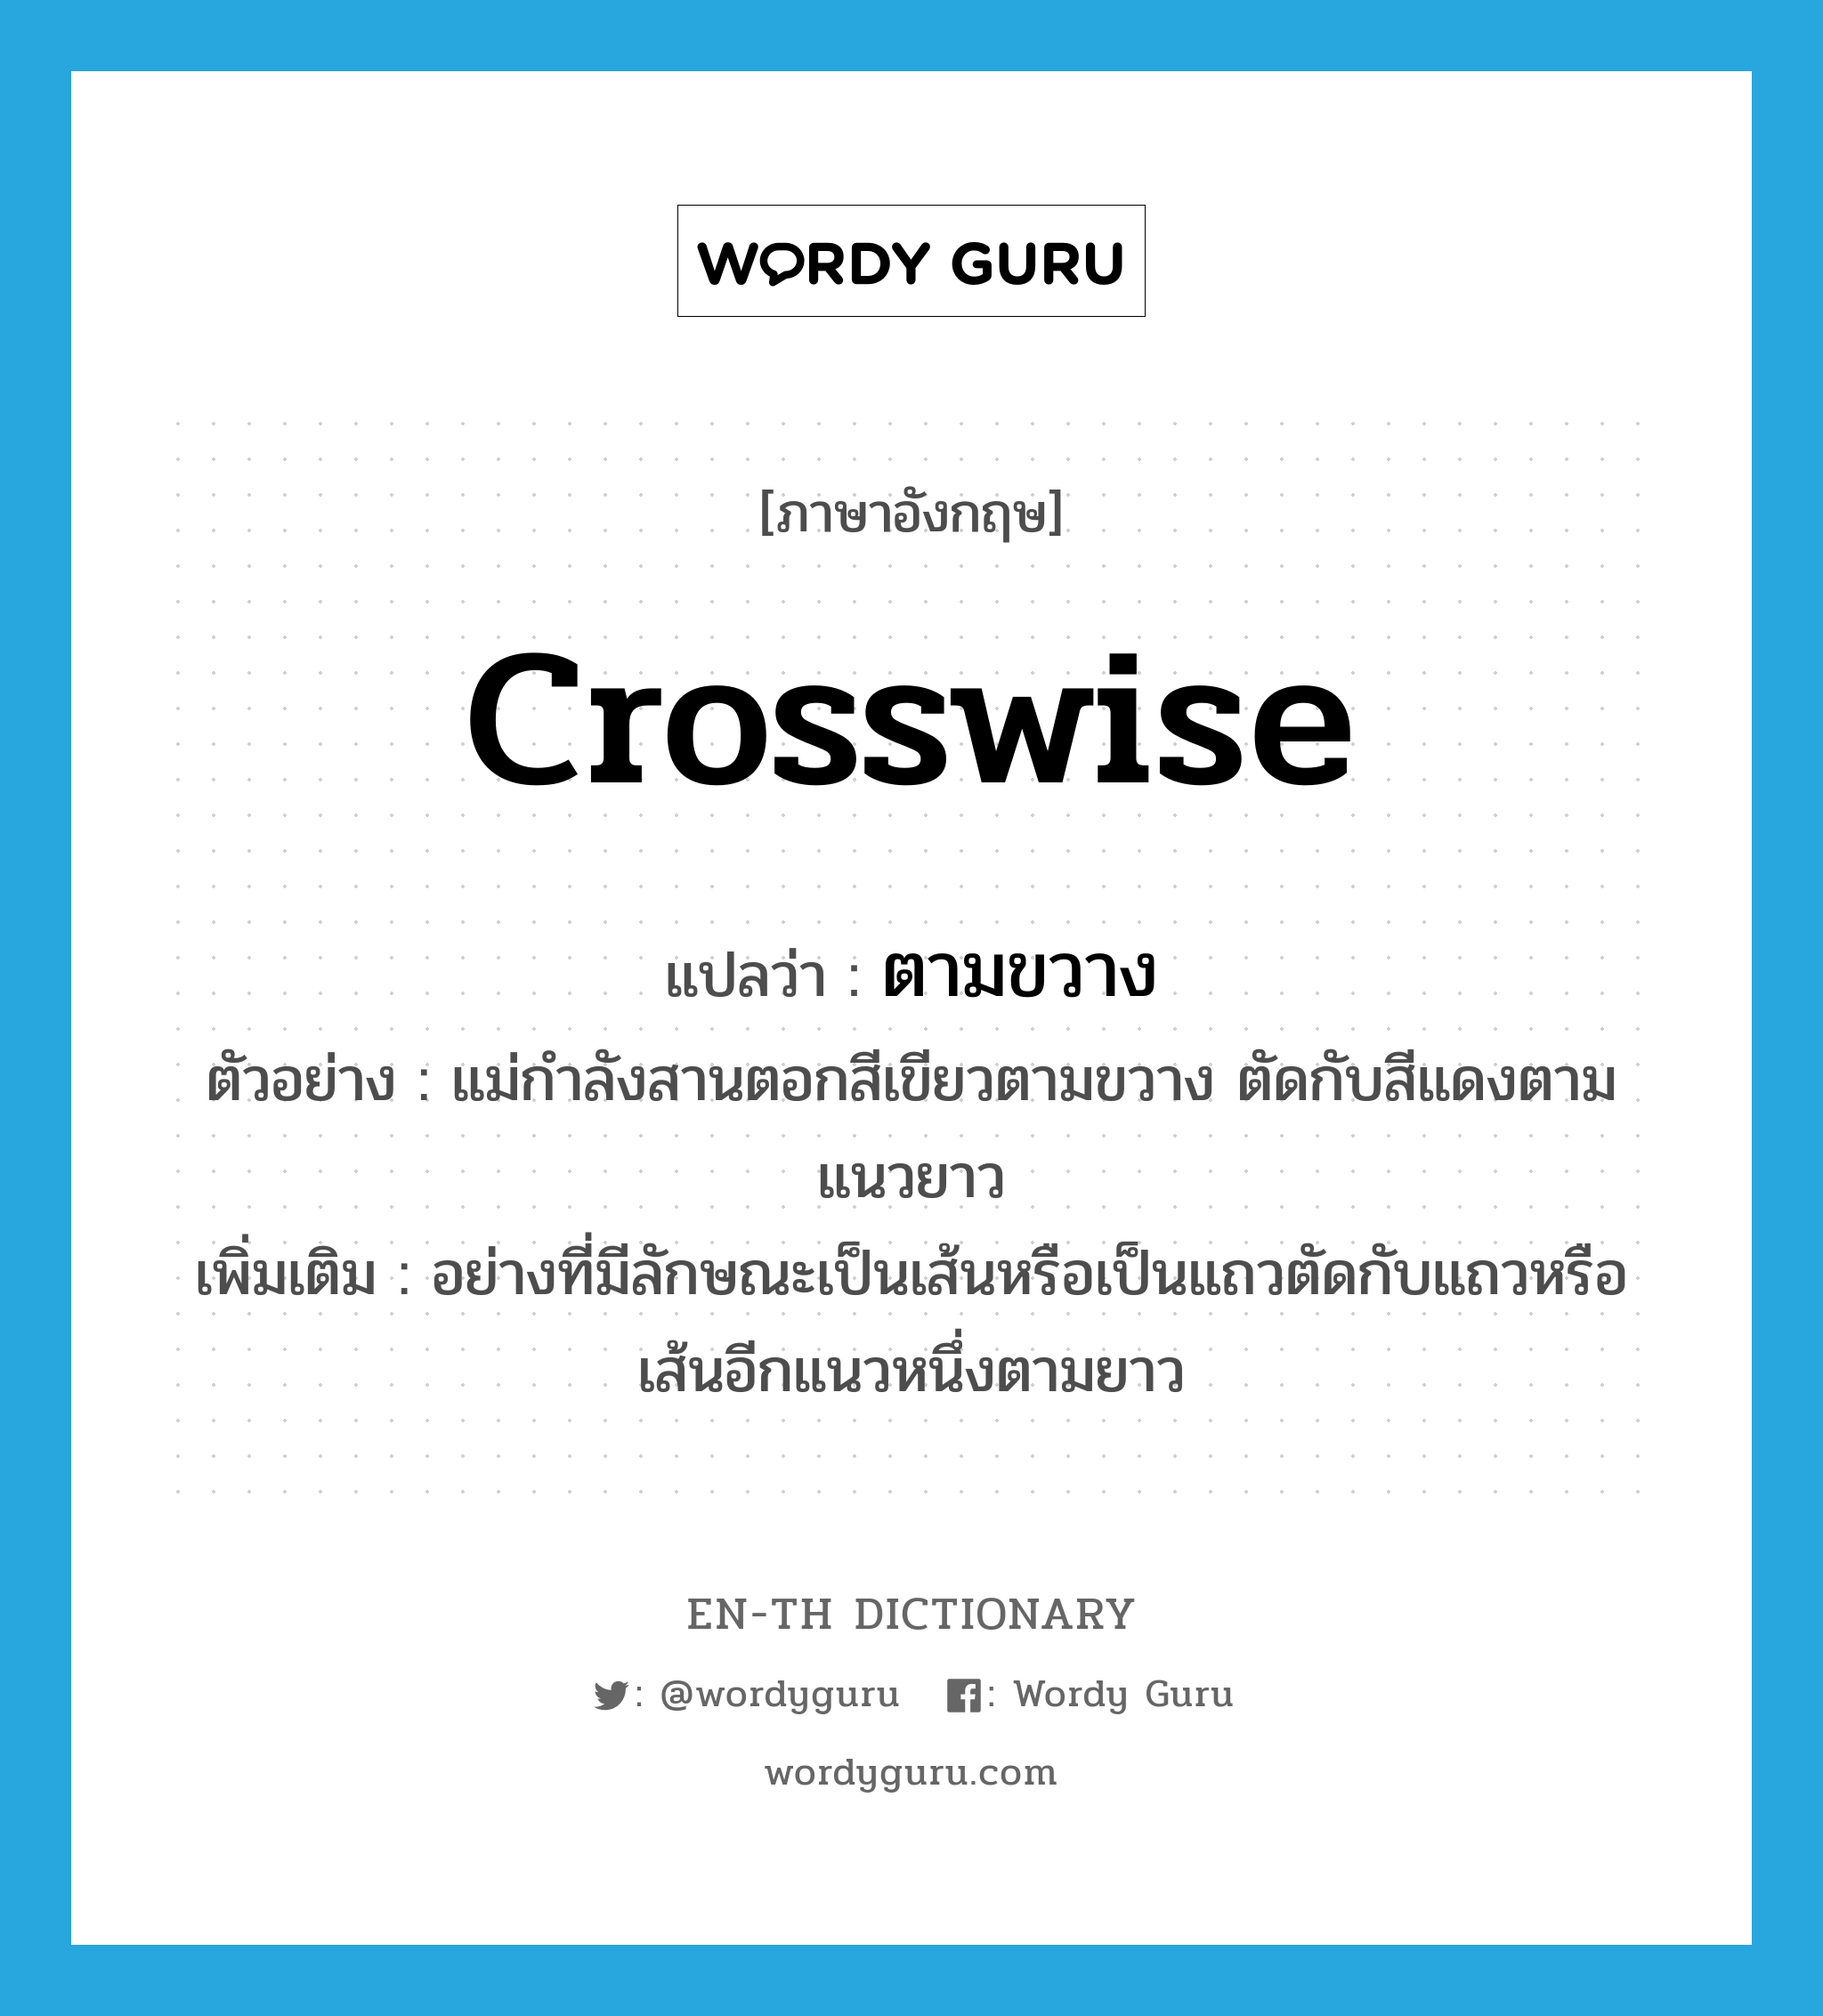 crosswise แปลว่า?, คำศัพท์ภาษาอังกฤษ crosswise แปลว่า ตามขวาง ประเภท ADV ตัวอย่าง แม่กำลังสานตอกสีเขียวตามขวาง ตัดกับสีแดงตามแนวยาว เพิ่มเติม อย่างที่มีลักษณะเป็นเส้นหรือเป็นแถวตัดกับแถวหรือเส้นอีกแนวหนึ่งตามยาว หมวด ADV